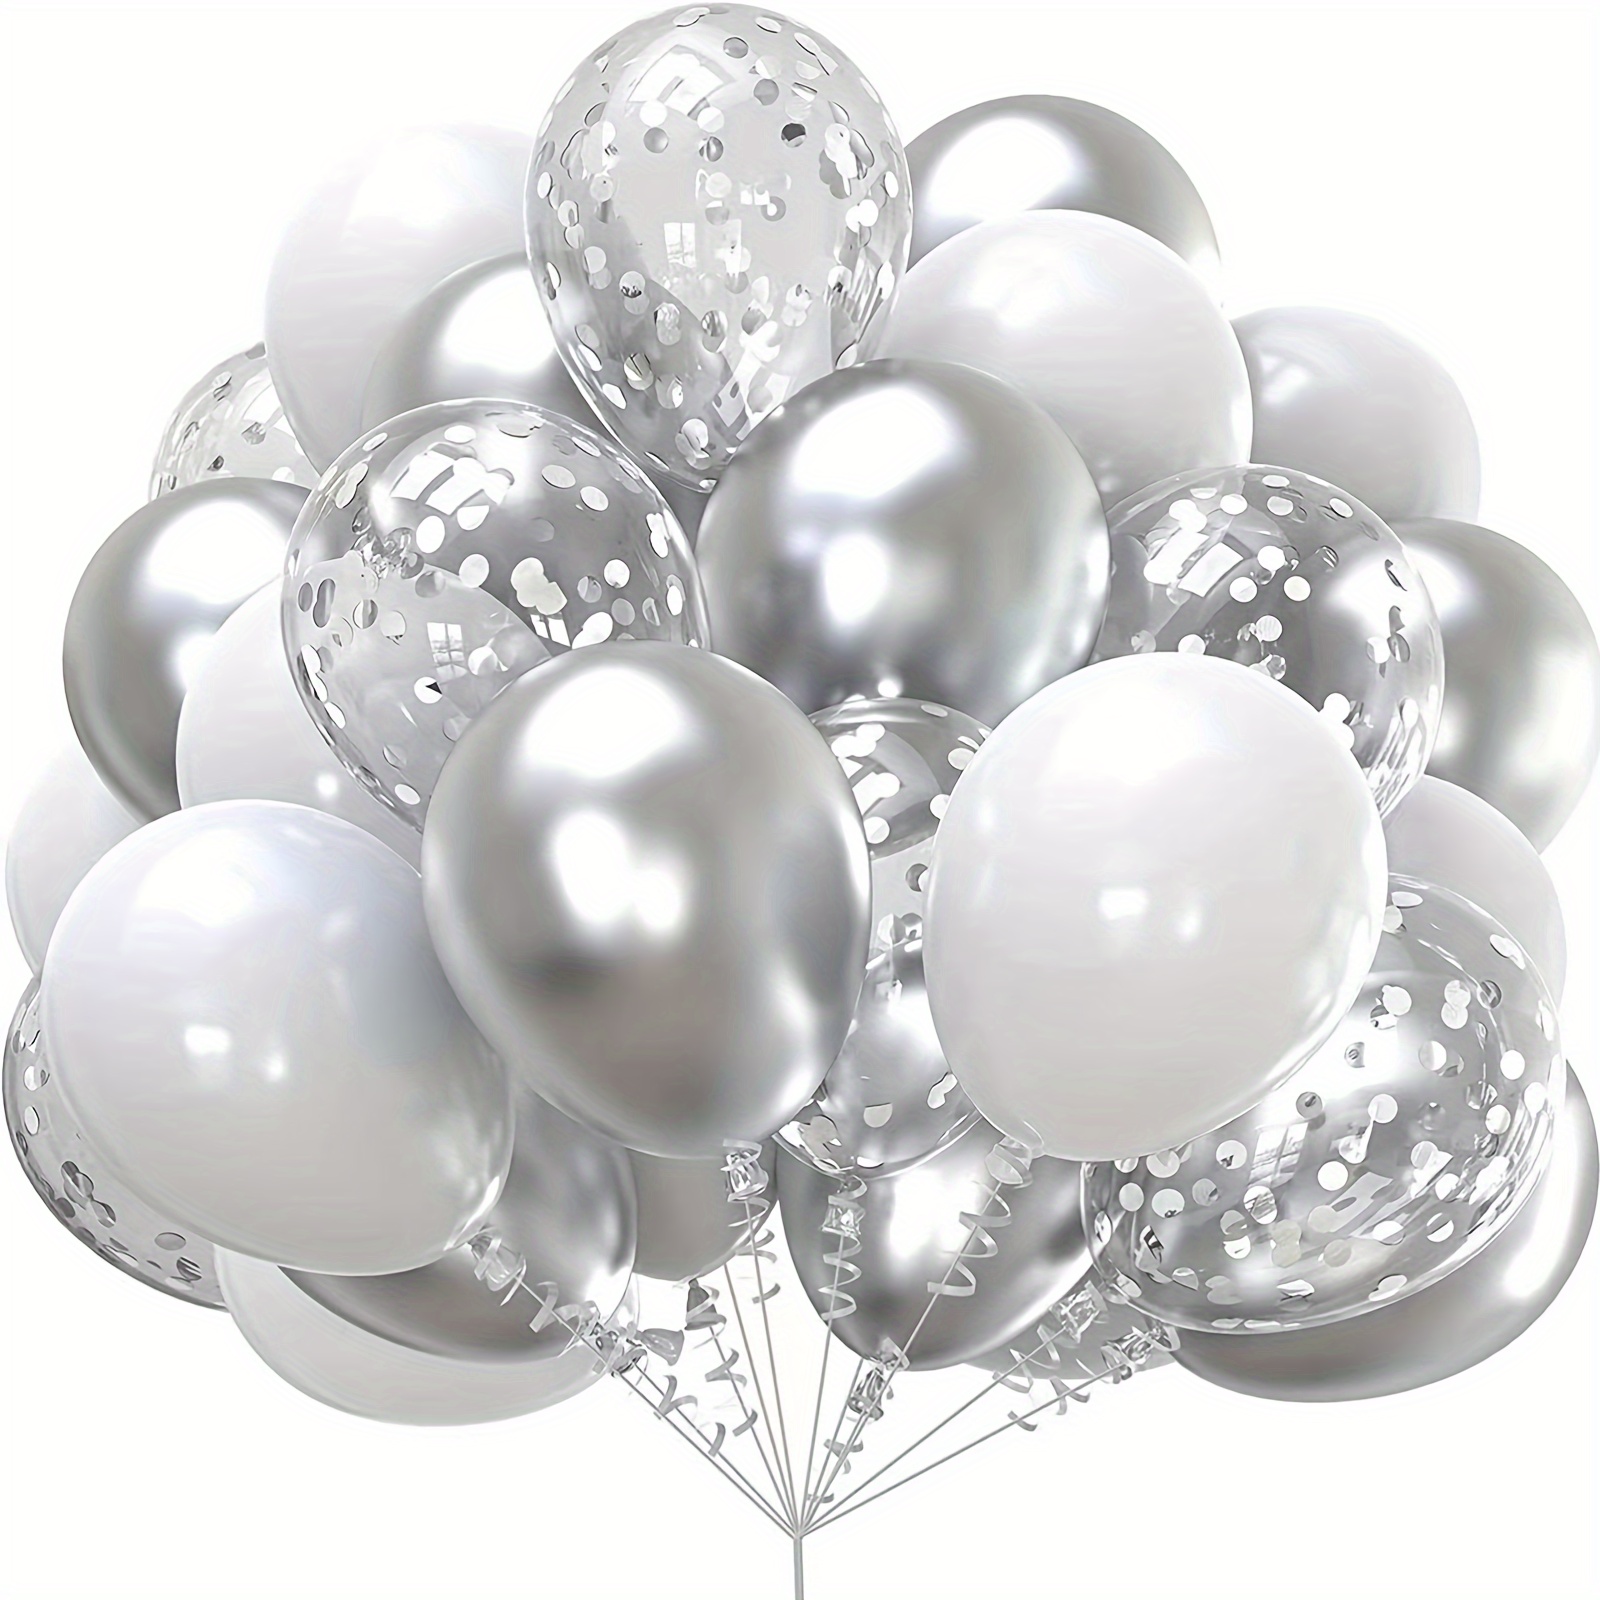 Globos negros y plateados, 60 globos plateados metálicos negros y blancos  de 12 pulgadas con globos de confeti plateados, globos de látex de helio